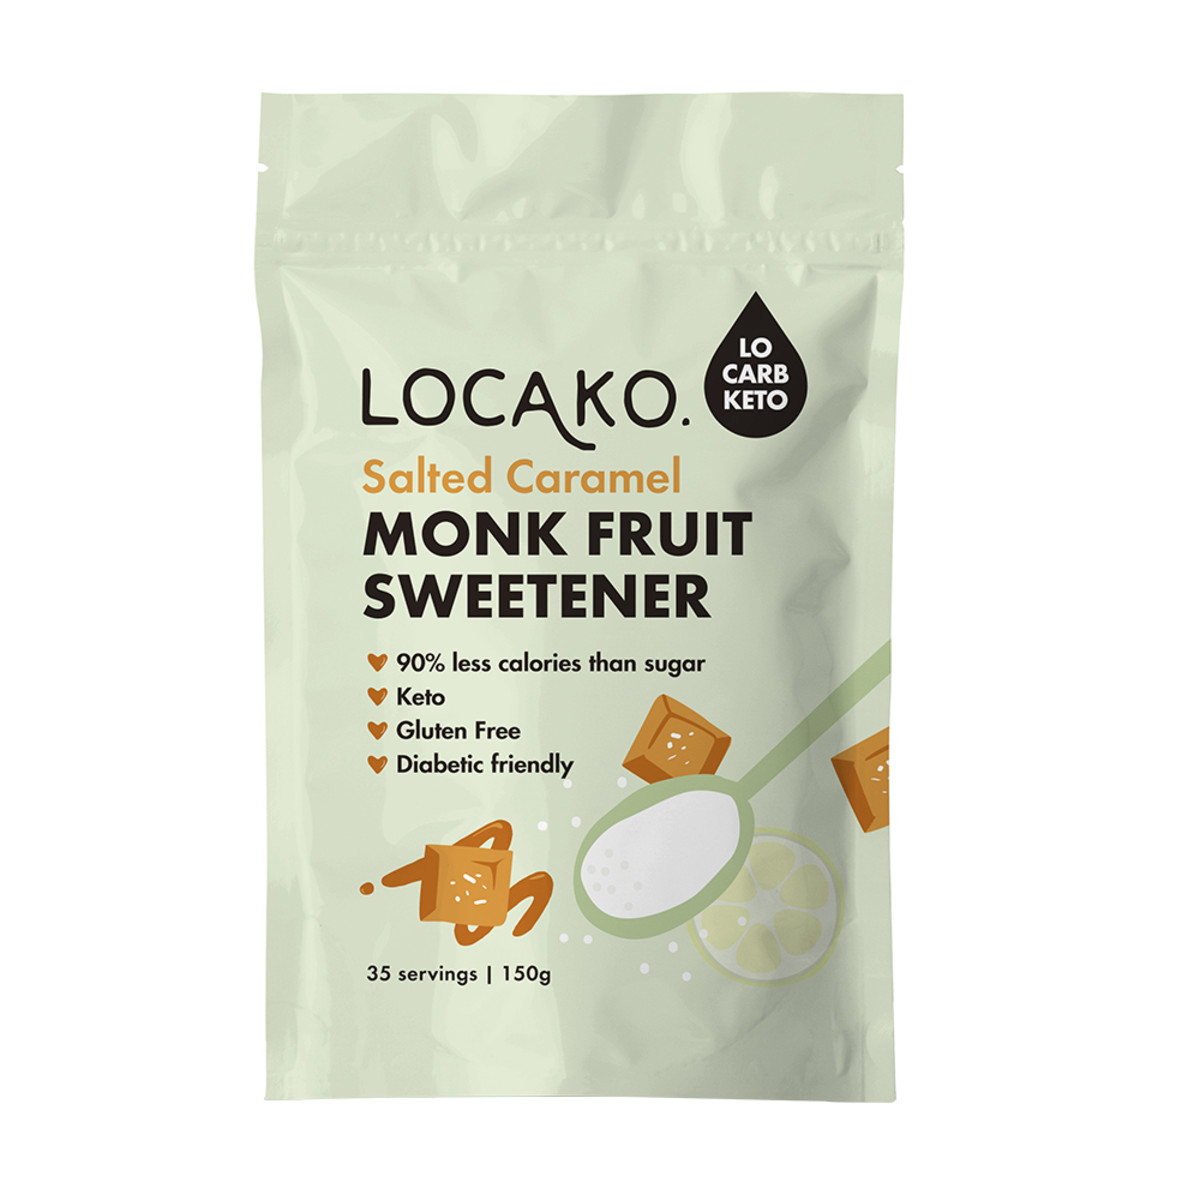 LOCAKO - Monk Fruit Sweetener Salted Caramel